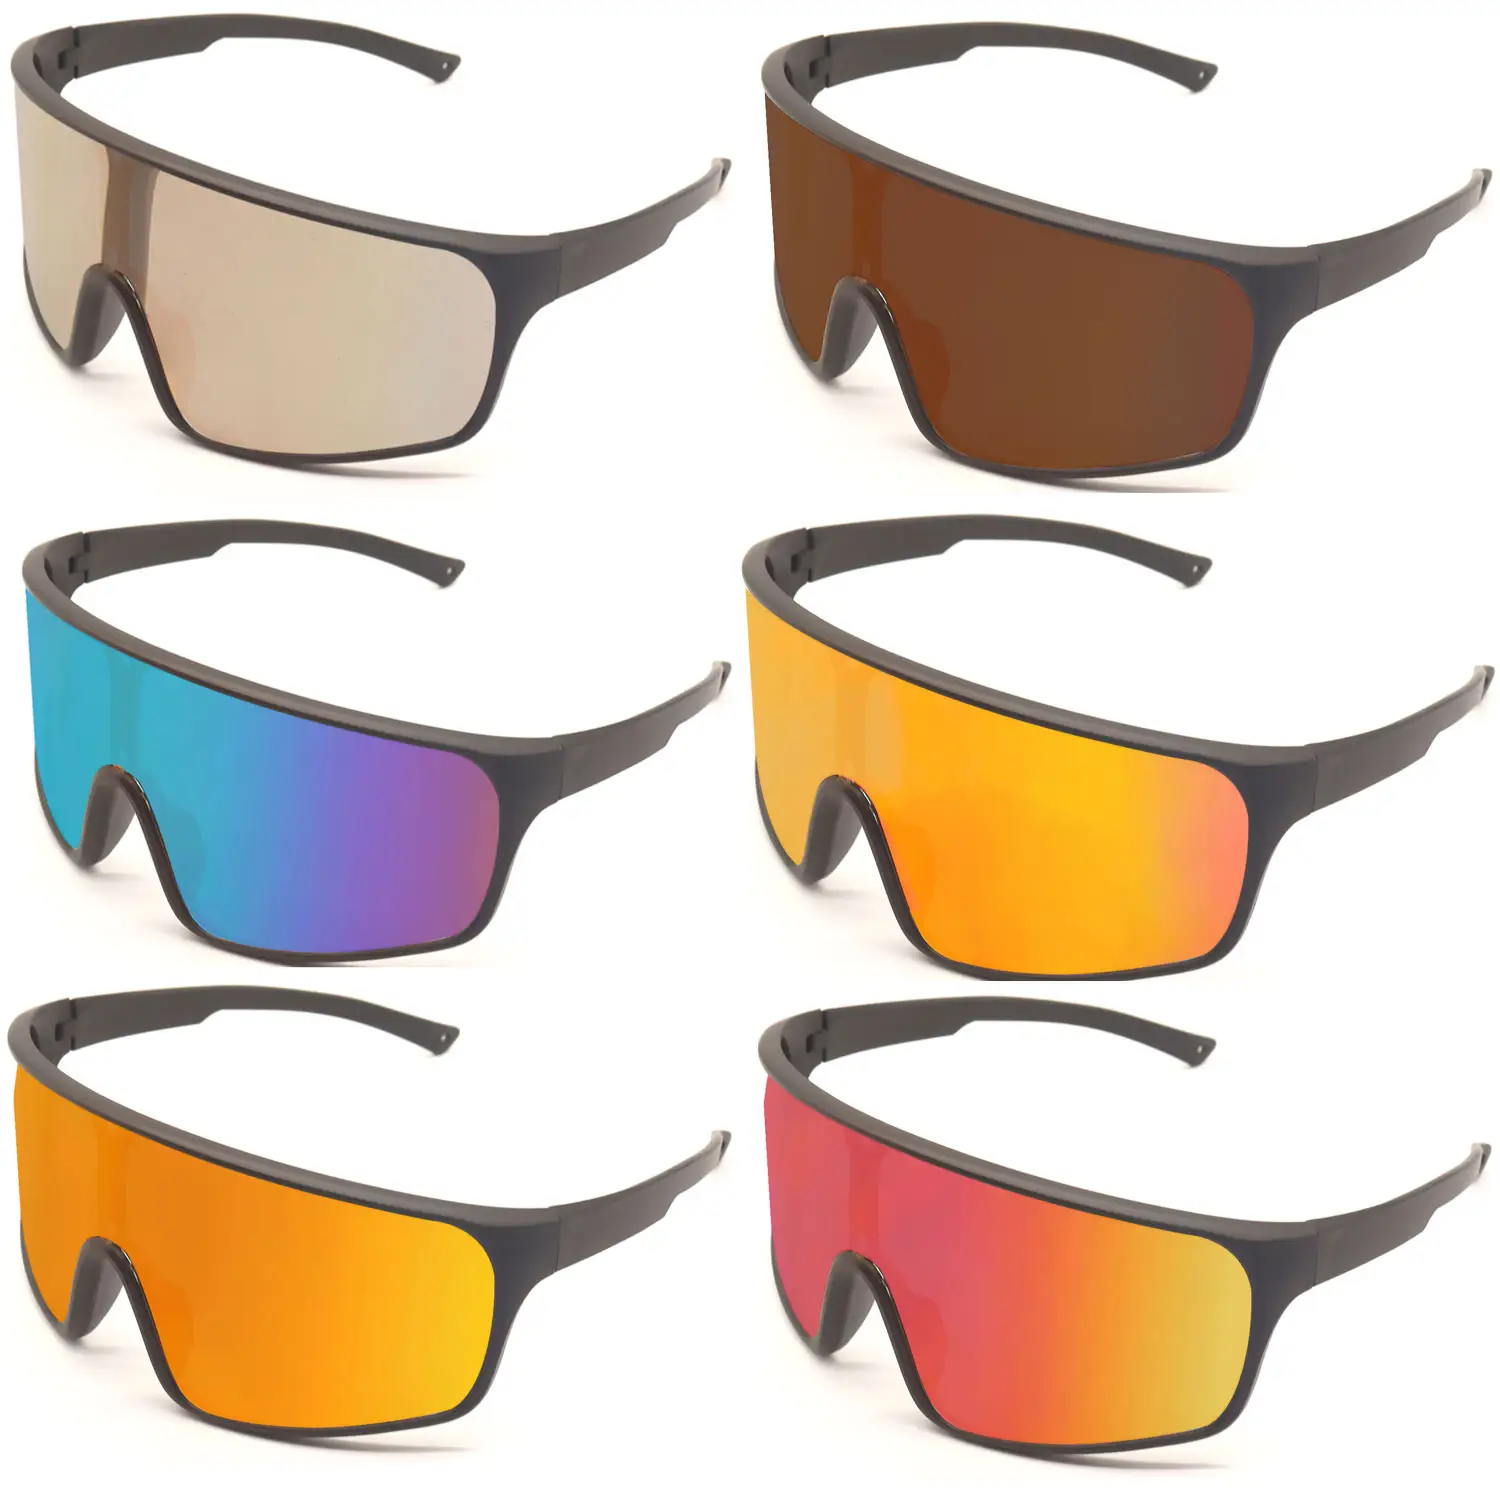 نظارات رياضية للدراجات من مستقطب للخارج نظارات حماية من الأشعة فوق البنفسجية 100% للدراجات نظارات عيون للدراجات نظارات حماية بصرية مطلية للعين للدراجات